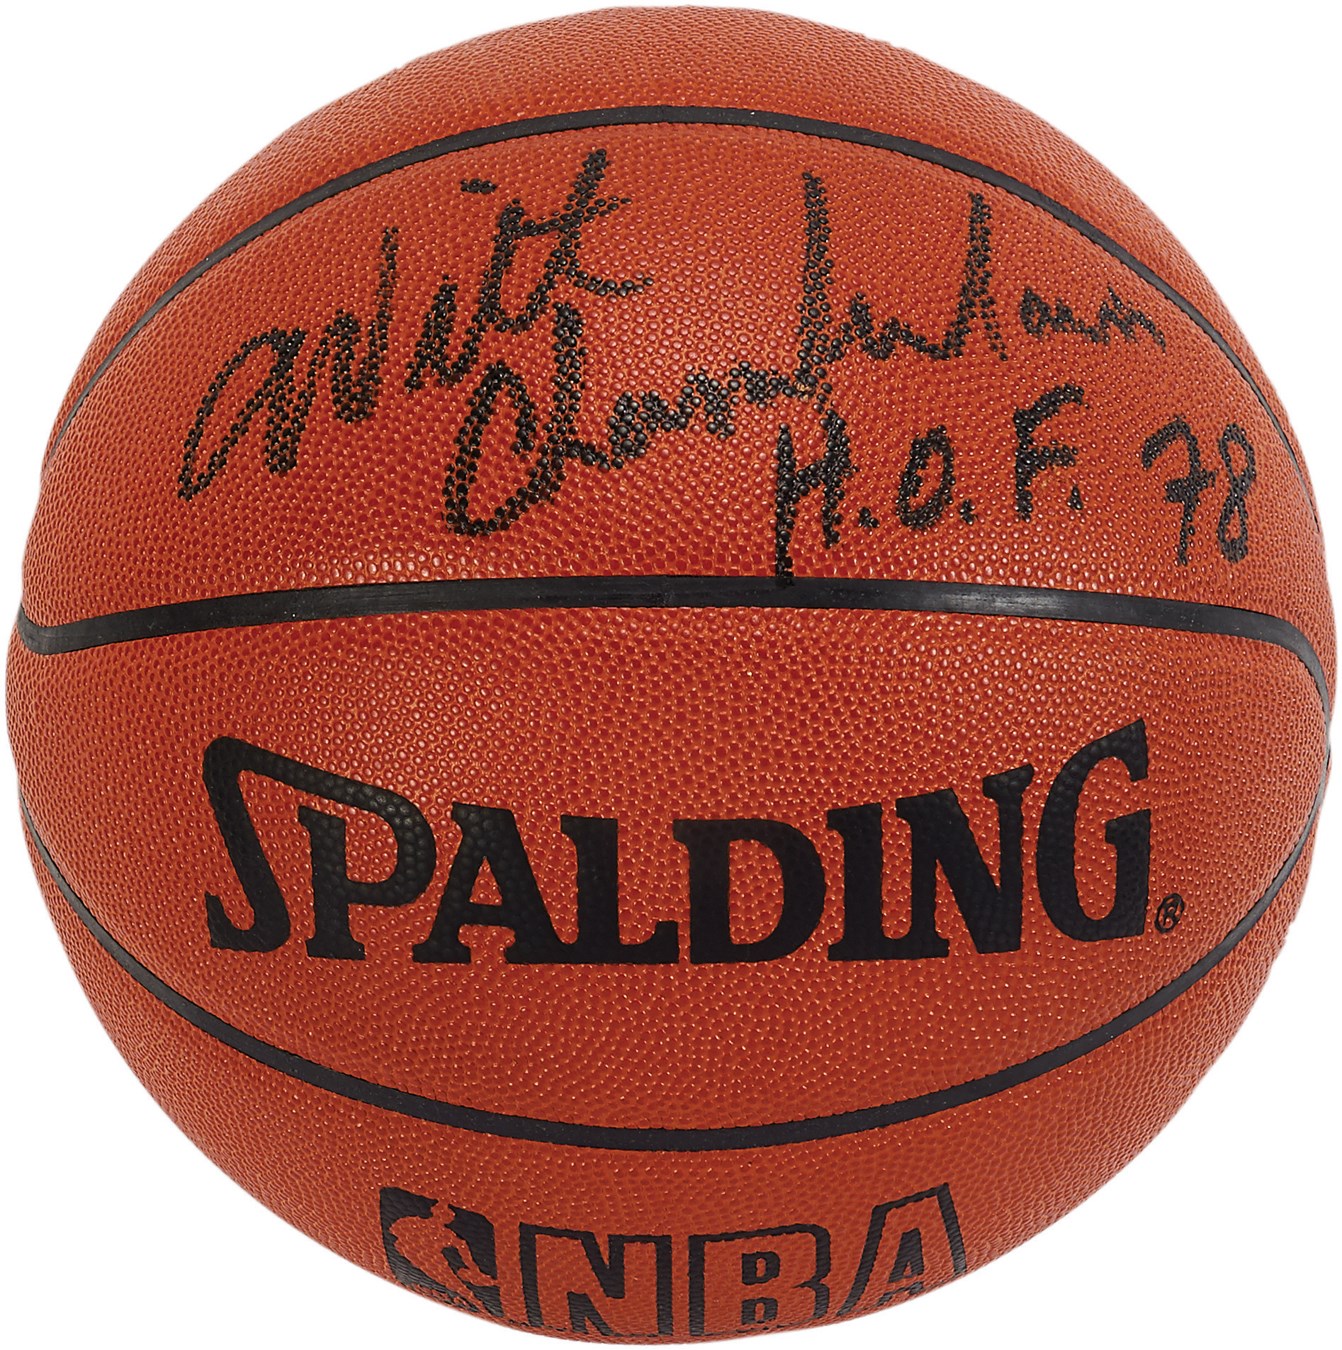 Basketball - Wilt Chamberlain Signed "HOF 78" Basketball